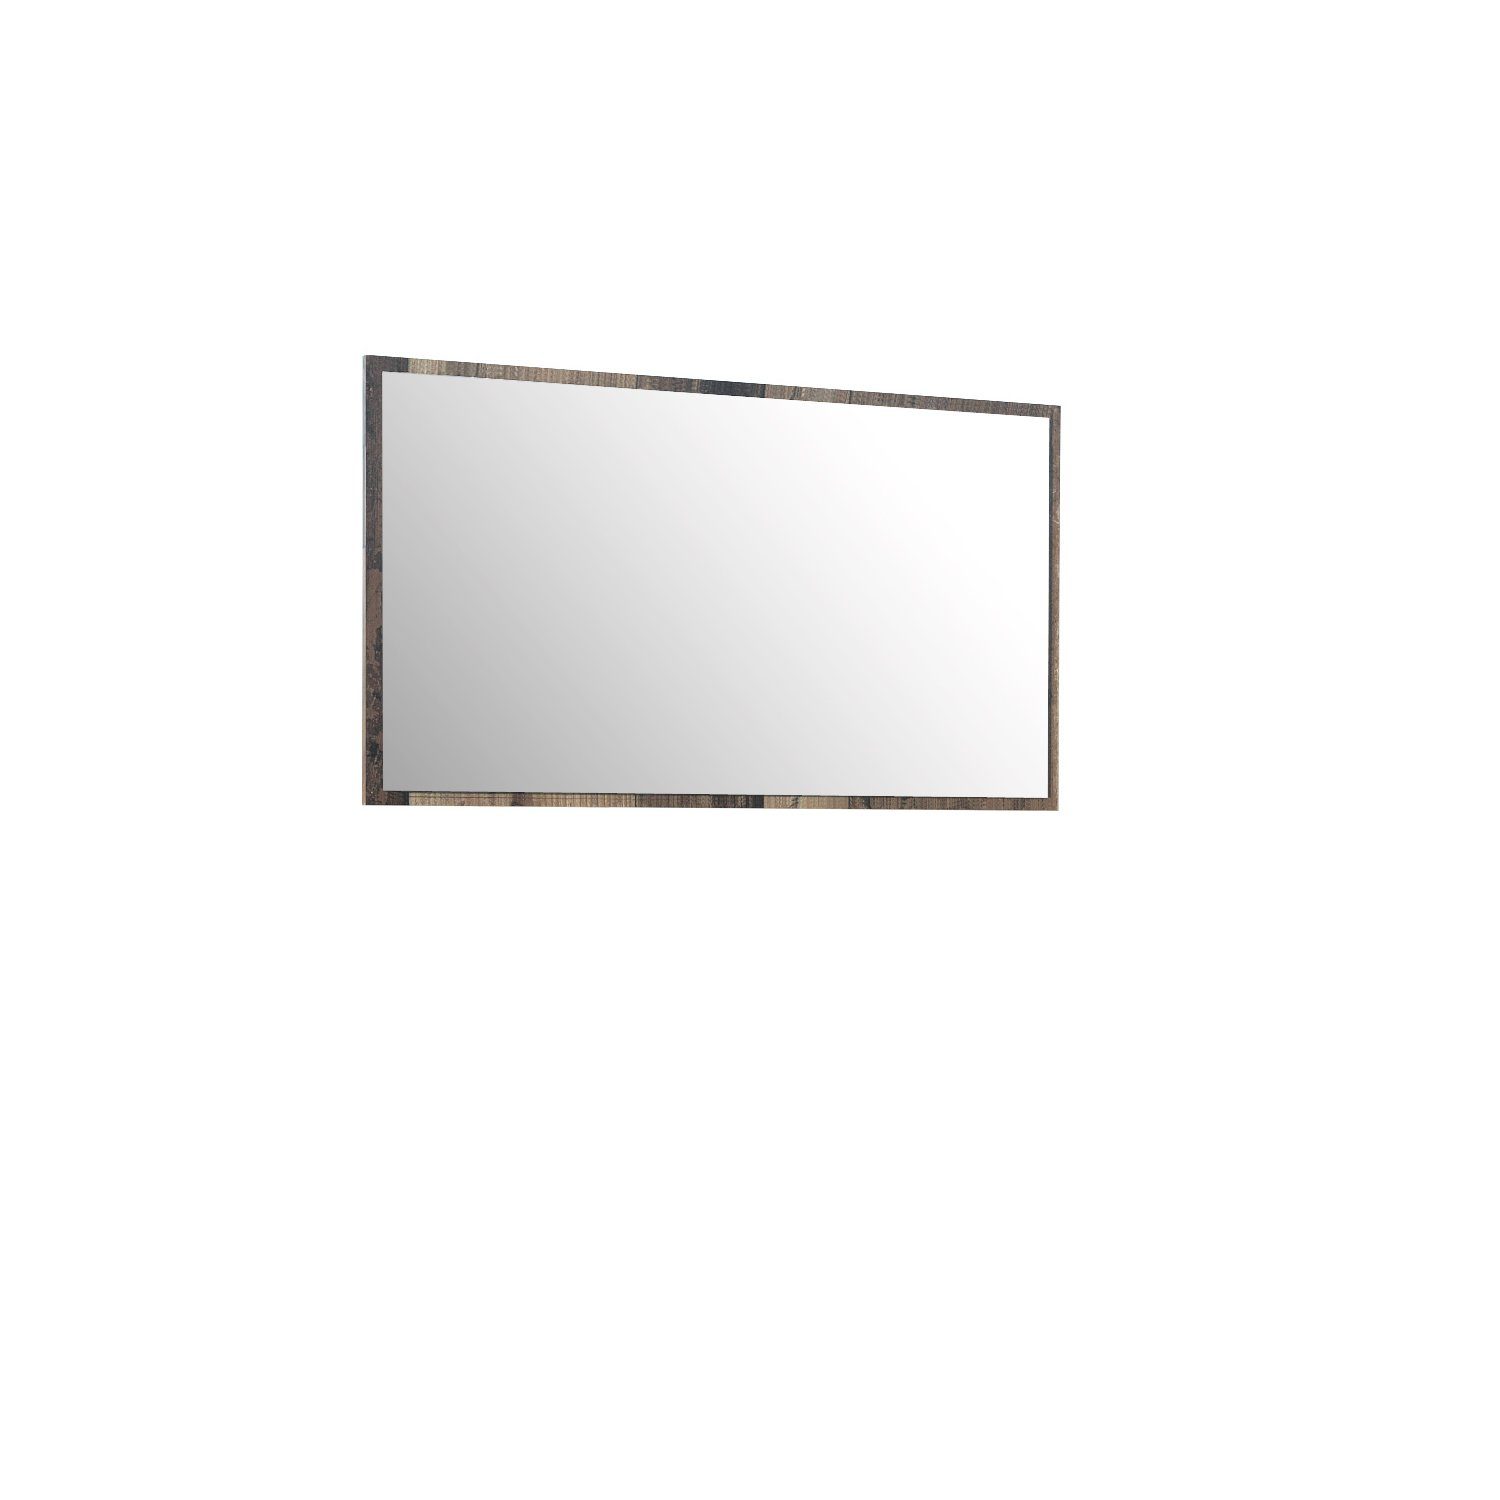 möbelando Wandspiegel Salford, Moderner Spiegel, Trägerplatte aus Spanplatte in Old Wood Vintage Nachbildung. Breite 120 cm, Höhe 70 cm, Tiefe 1,8 cm